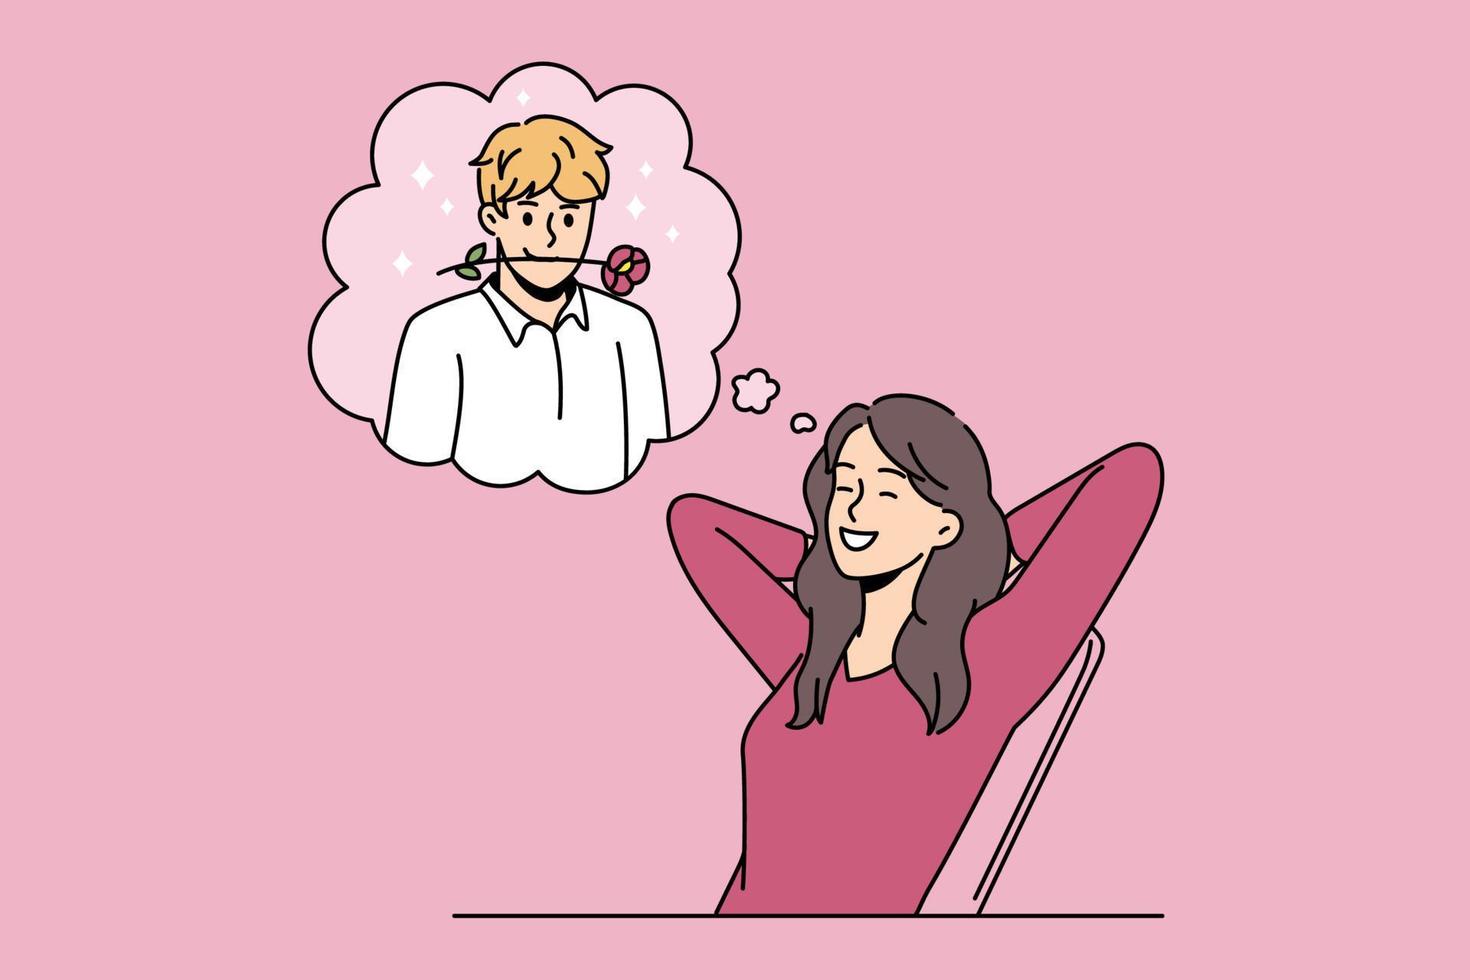 namoro romântico e sonhando com o conceito de amor. mulher positiva sorridente sentada e sonhando com o namorado com flor rosa na ilustração vetorial de boca vetor